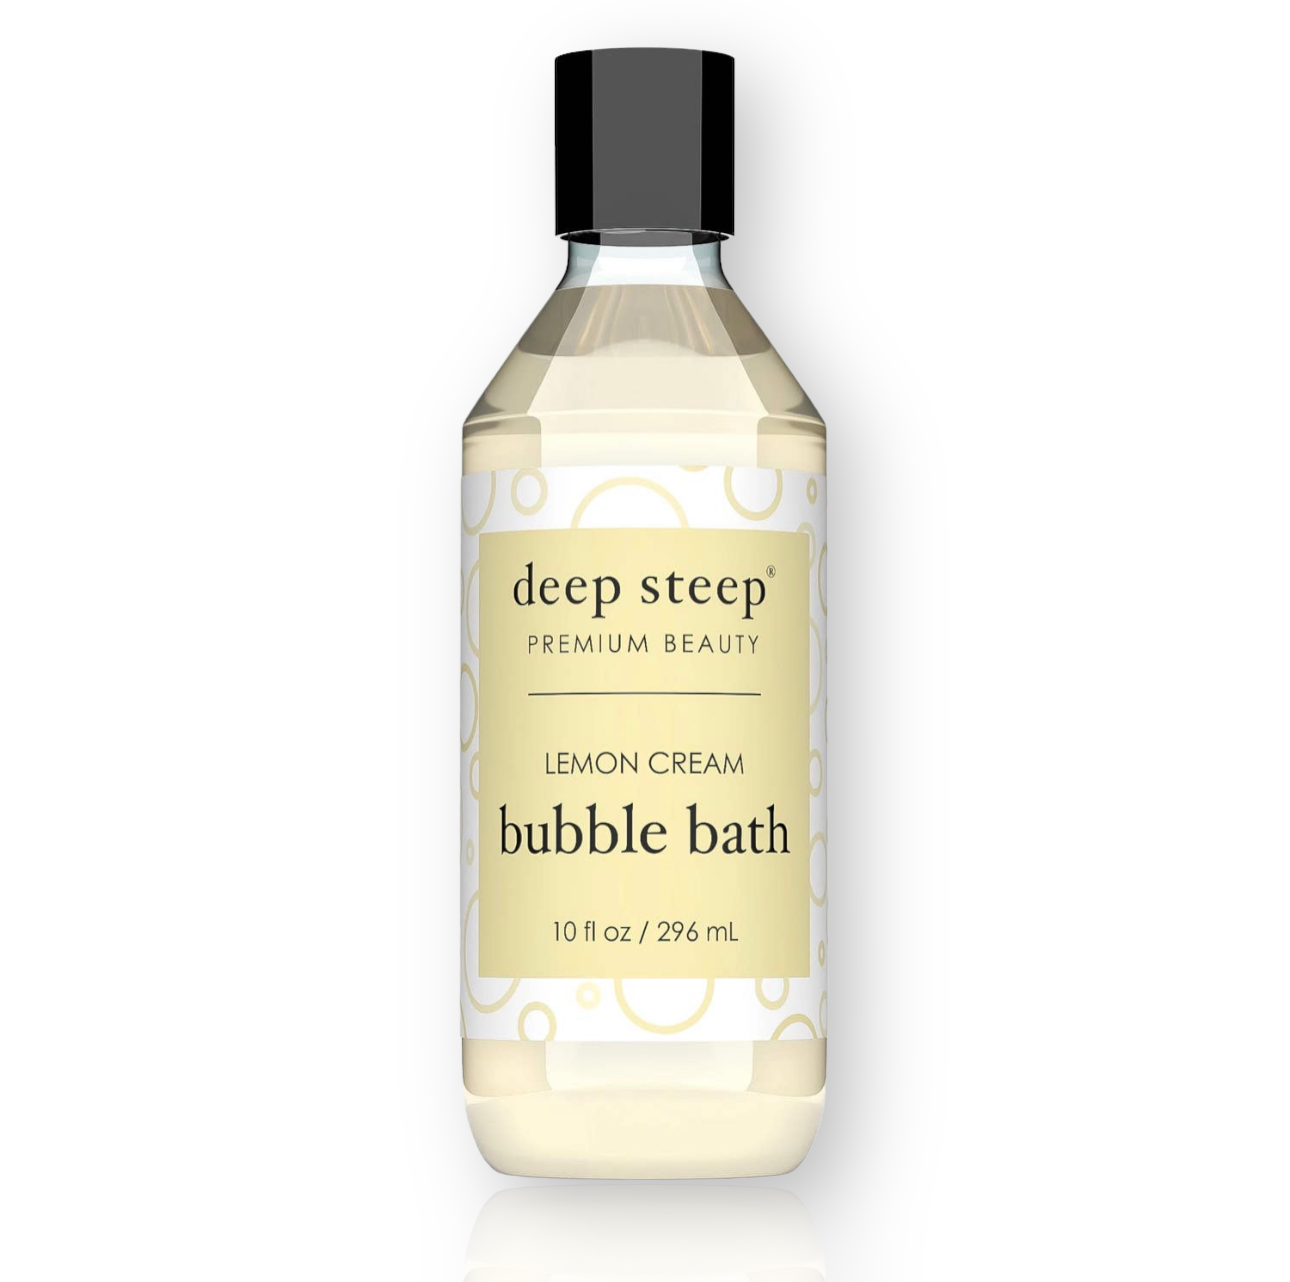 Deep Steep Lemon Cream Bubble Bath